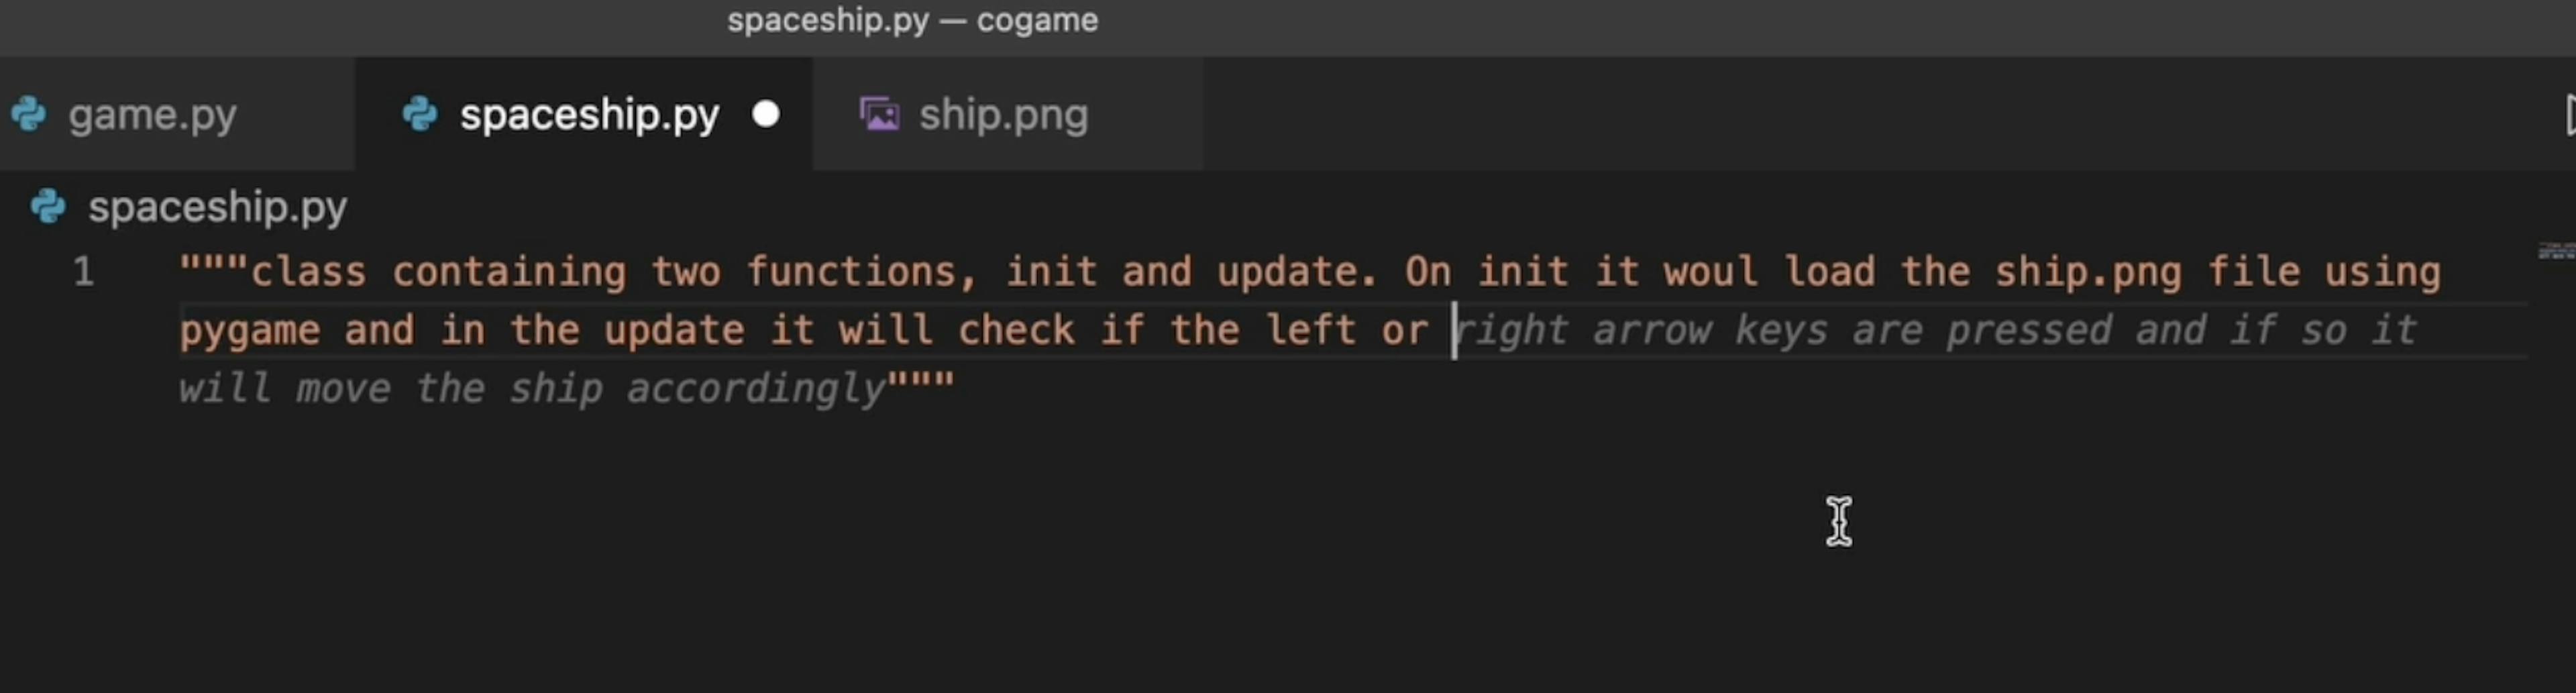 Copilot no solo escribe el código, sino que también sugiere lo que le gustaría que hiciera